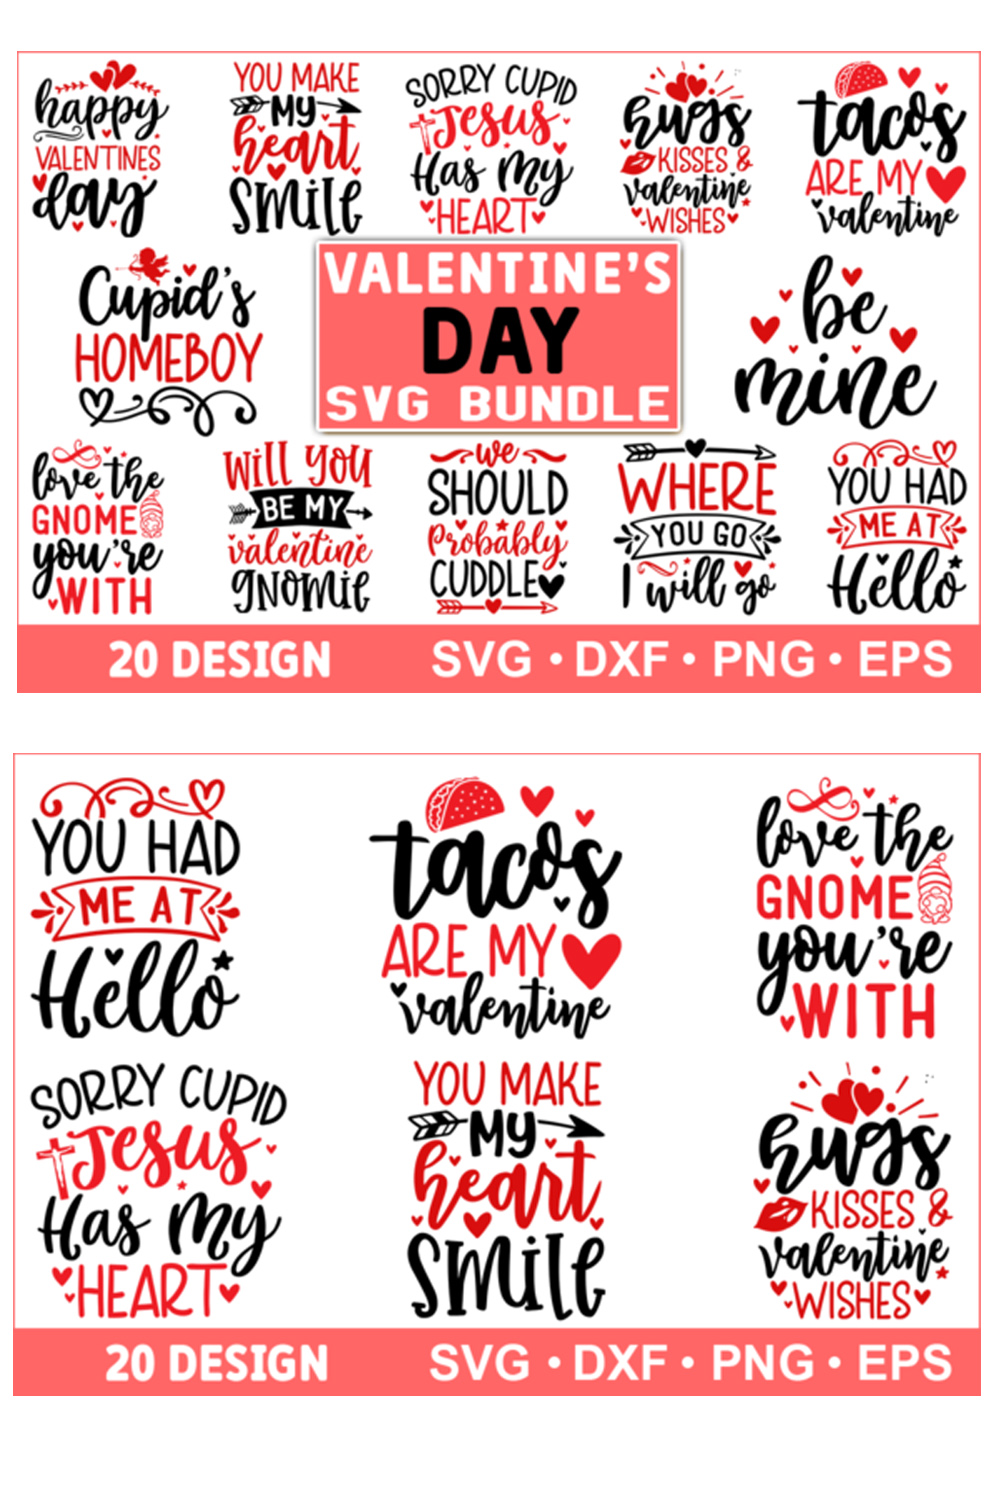 Valentine's Day SVG Bundle Design pinterest image.